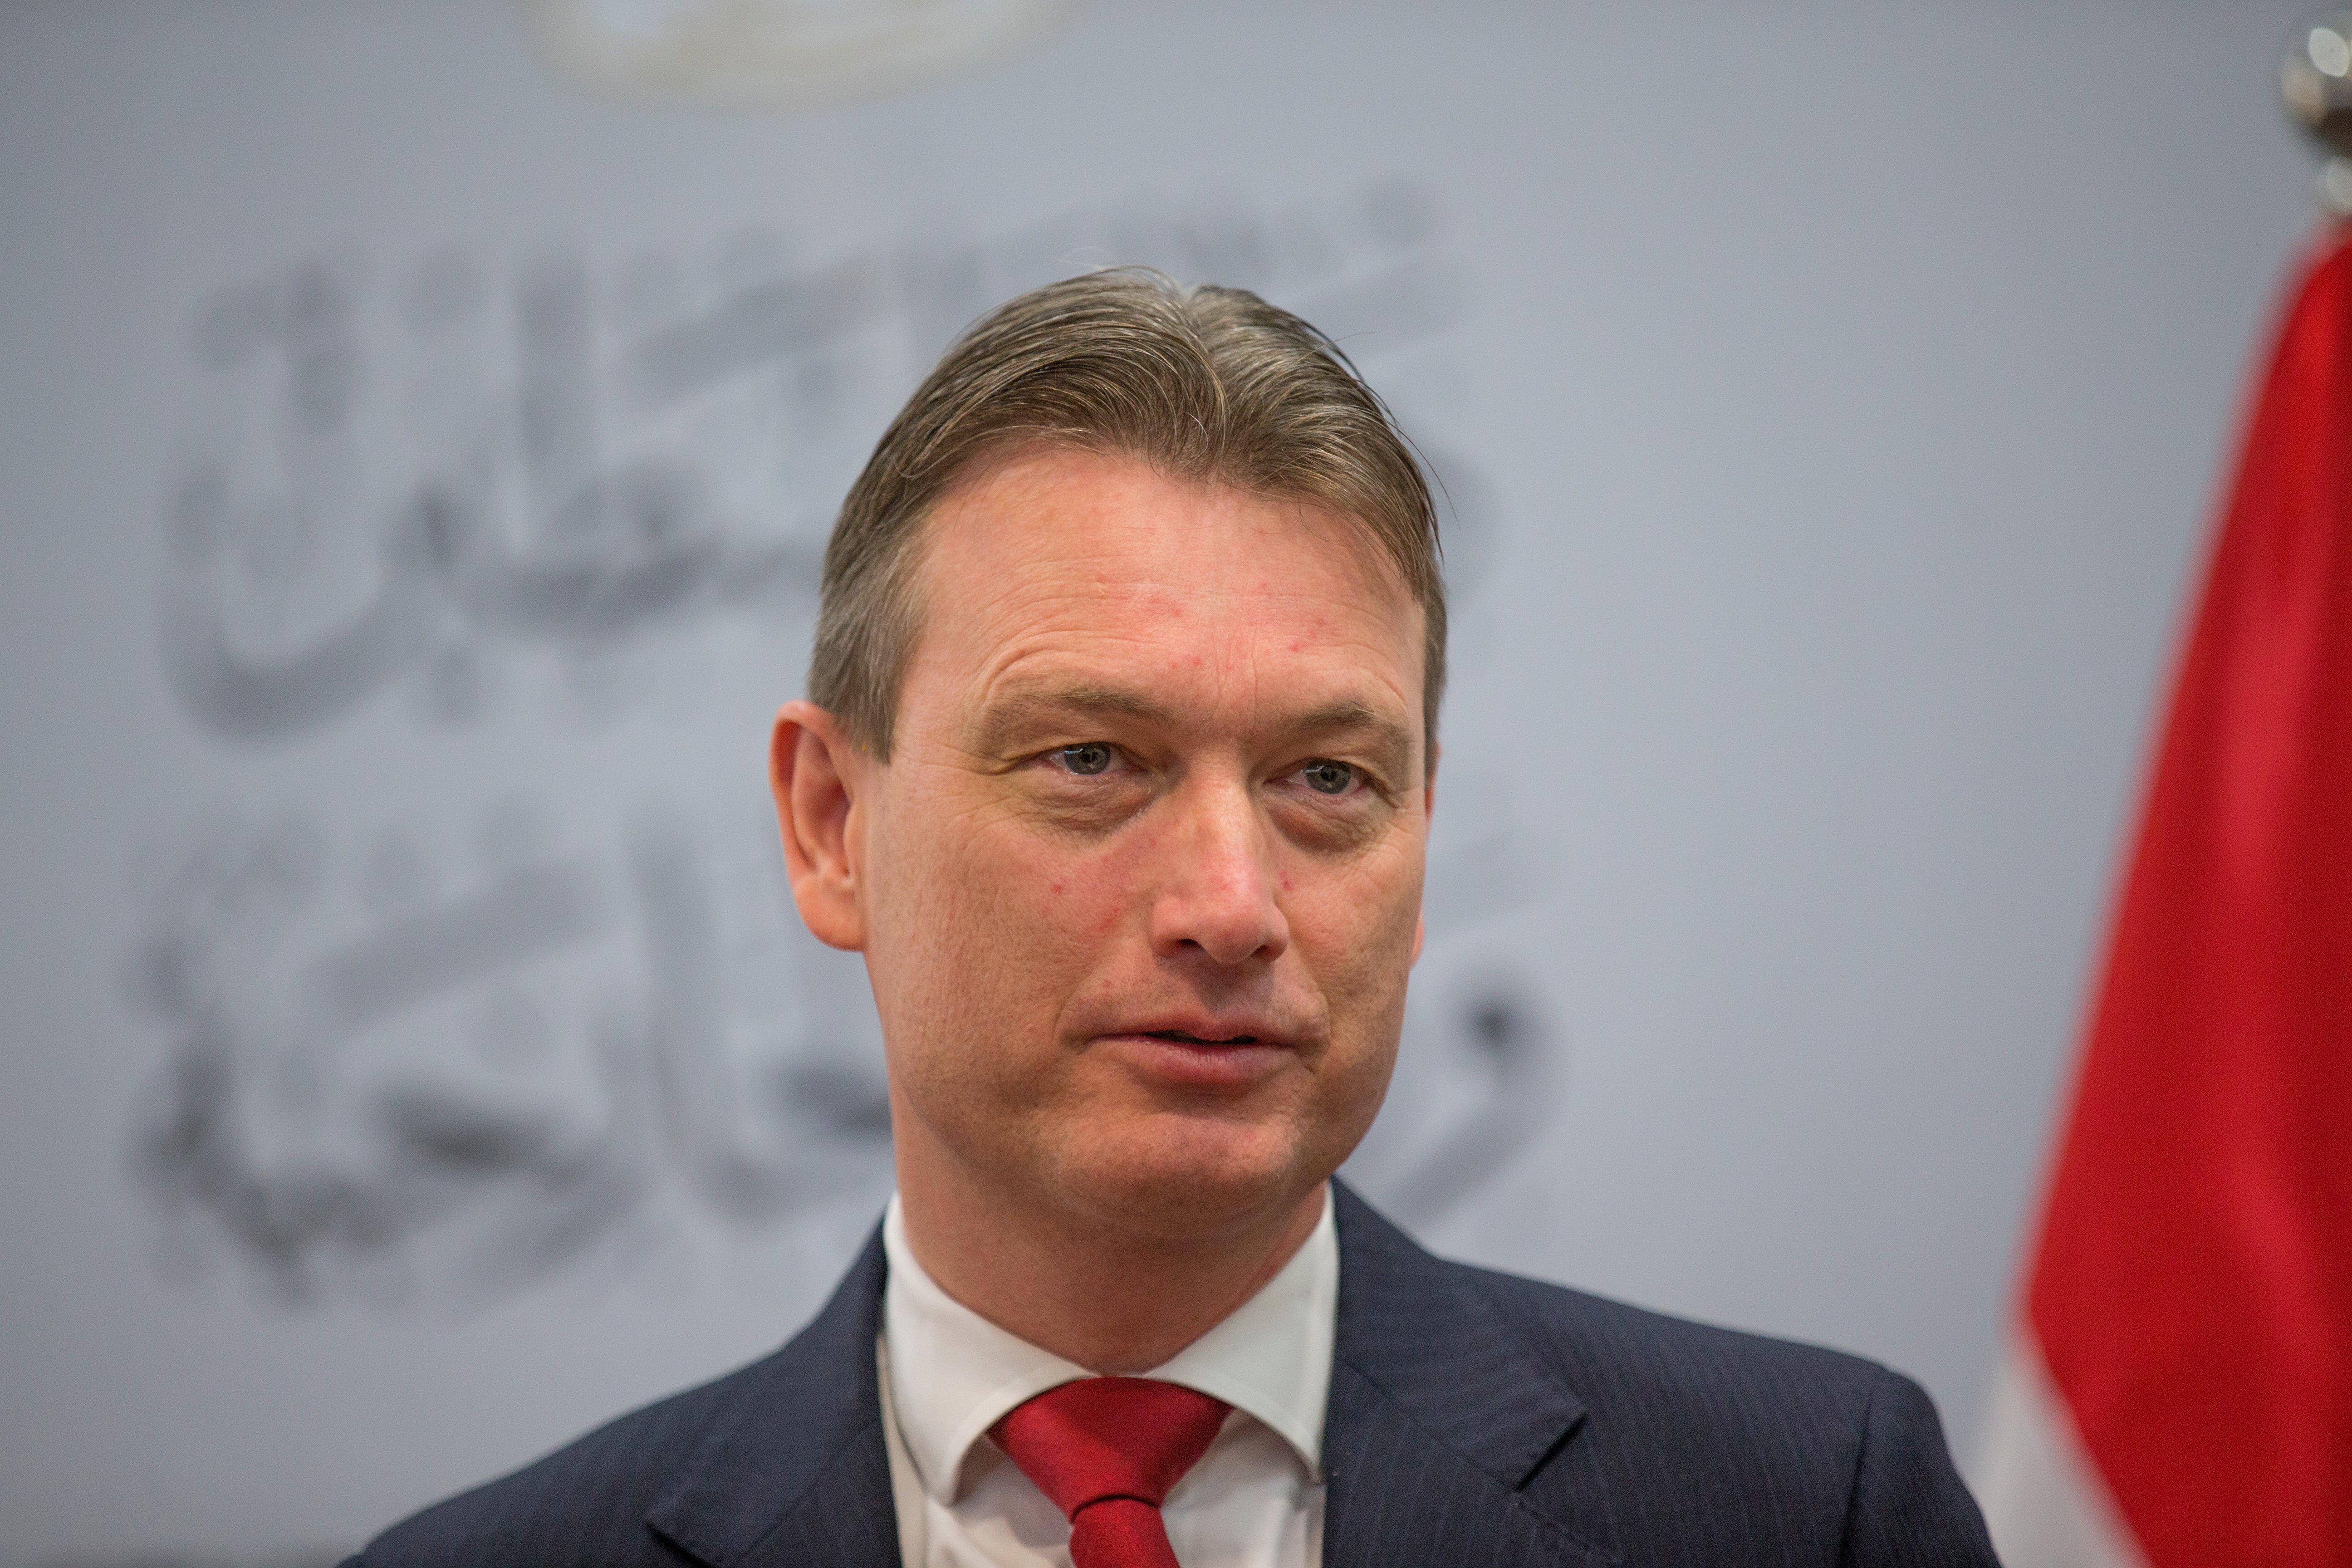 Ministro da diplomacia holandesa demite-se devido a mentira sobre reunião com Putin